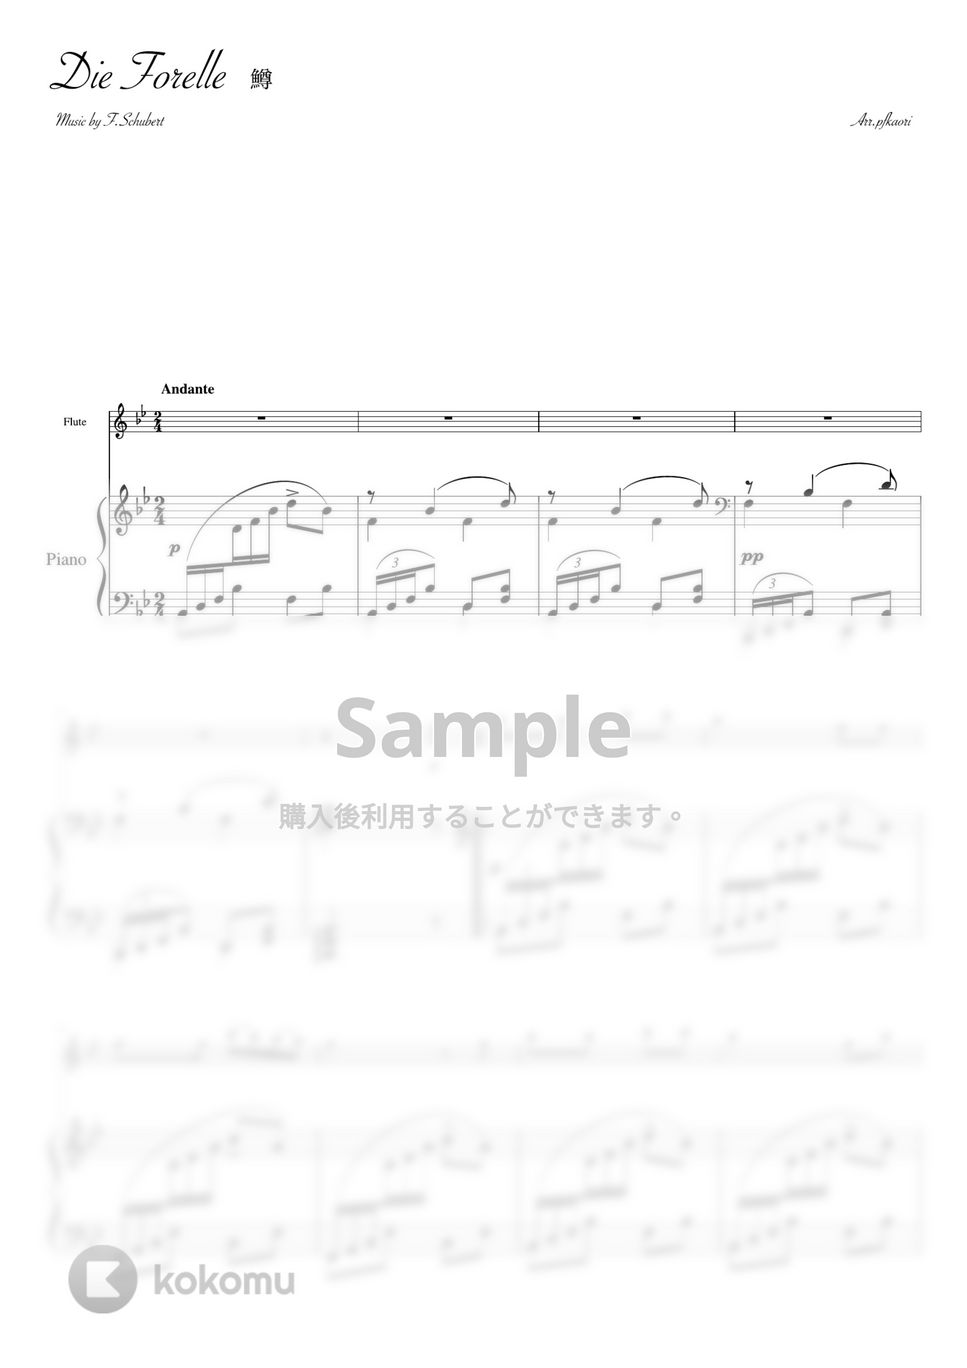 シューベルト - 鱒 (Bdur・フルート&ピアノ) by pfkaori